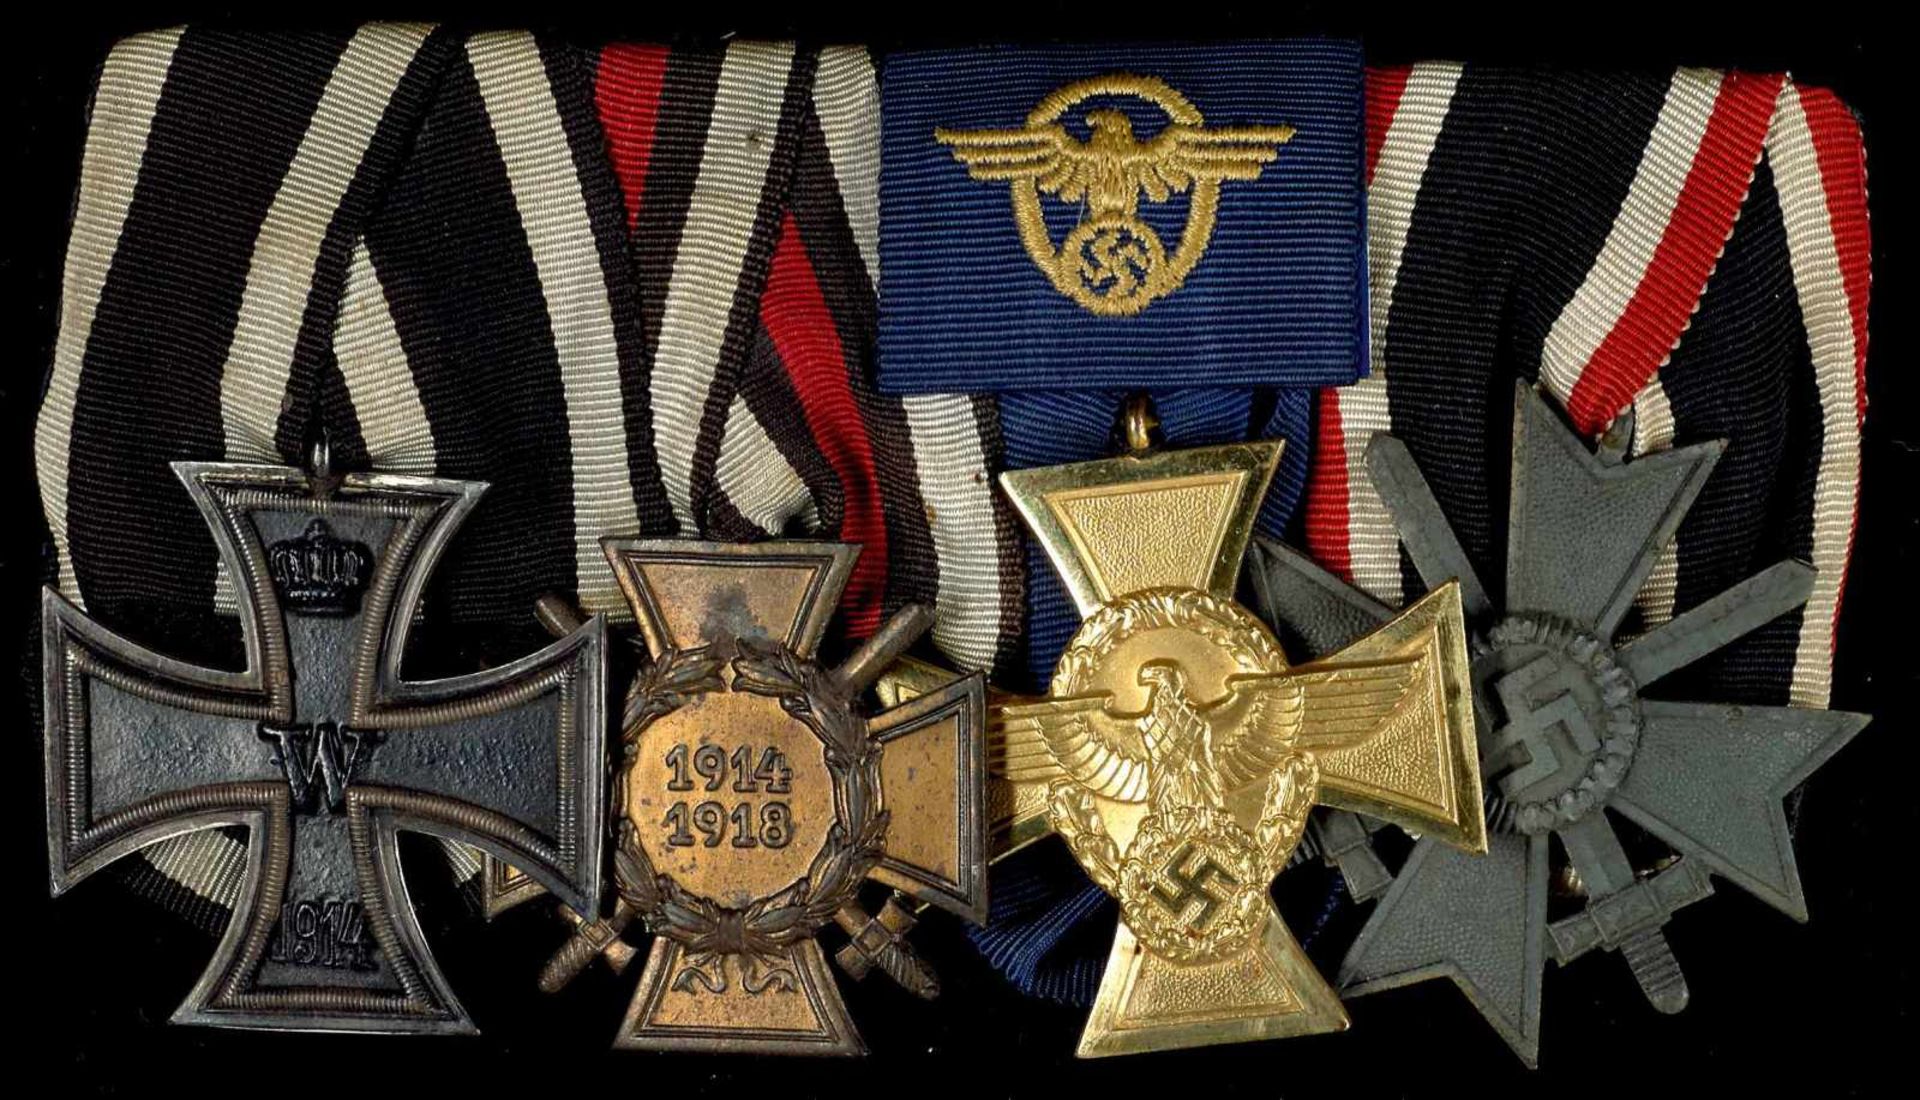 Ordenspangen 3. Reich 2. Weltkrieg Ordensspange mit Eisernes Kreuz 1914 2. Klasse, Frontkämpfer